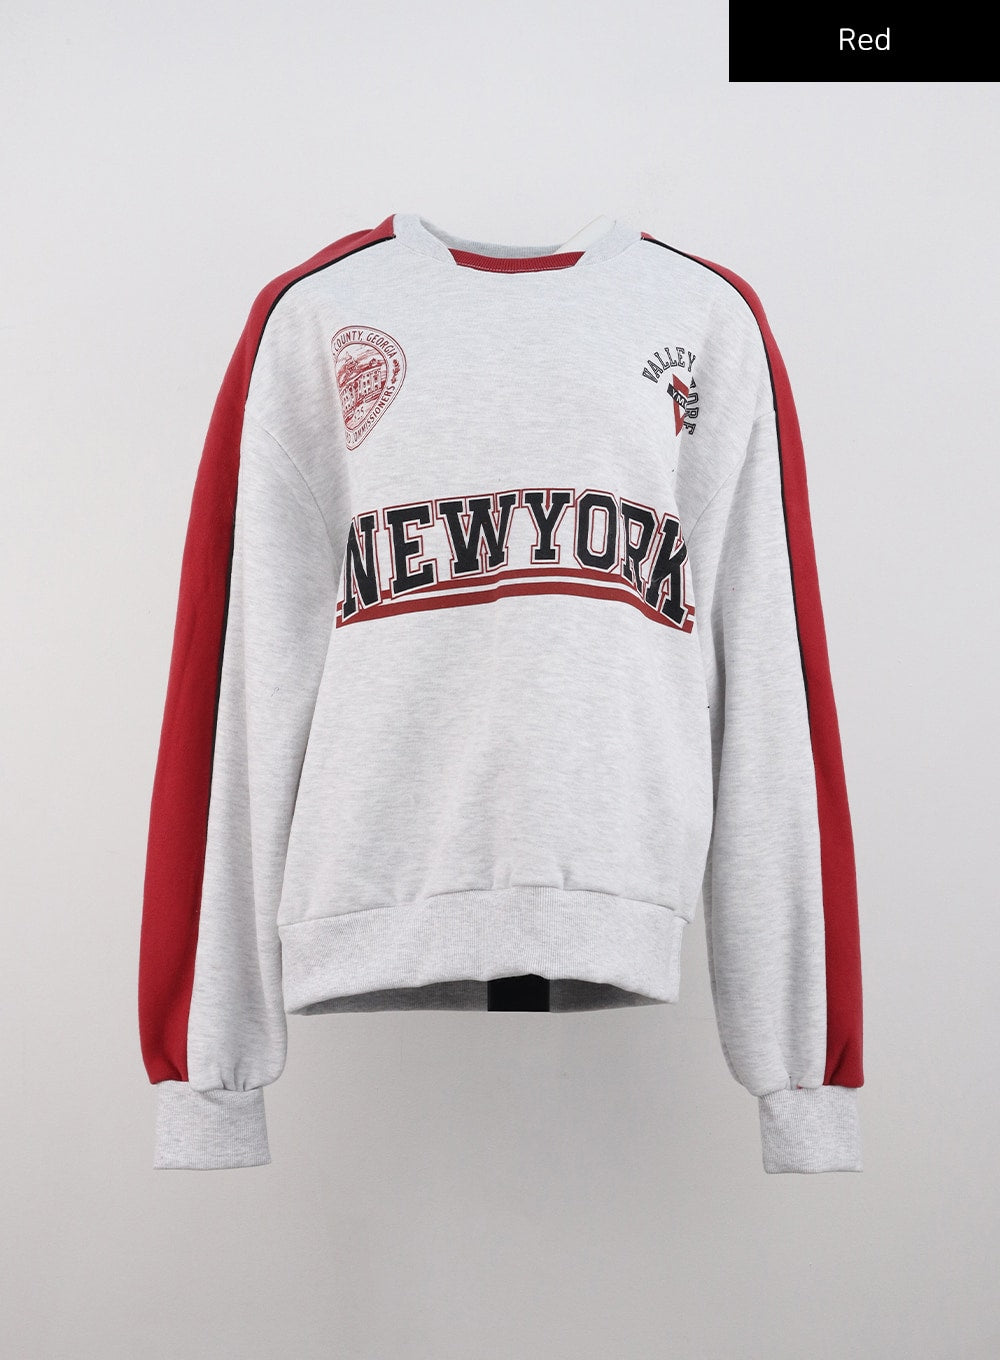 new-york-sweatshirt-cd301 / Red